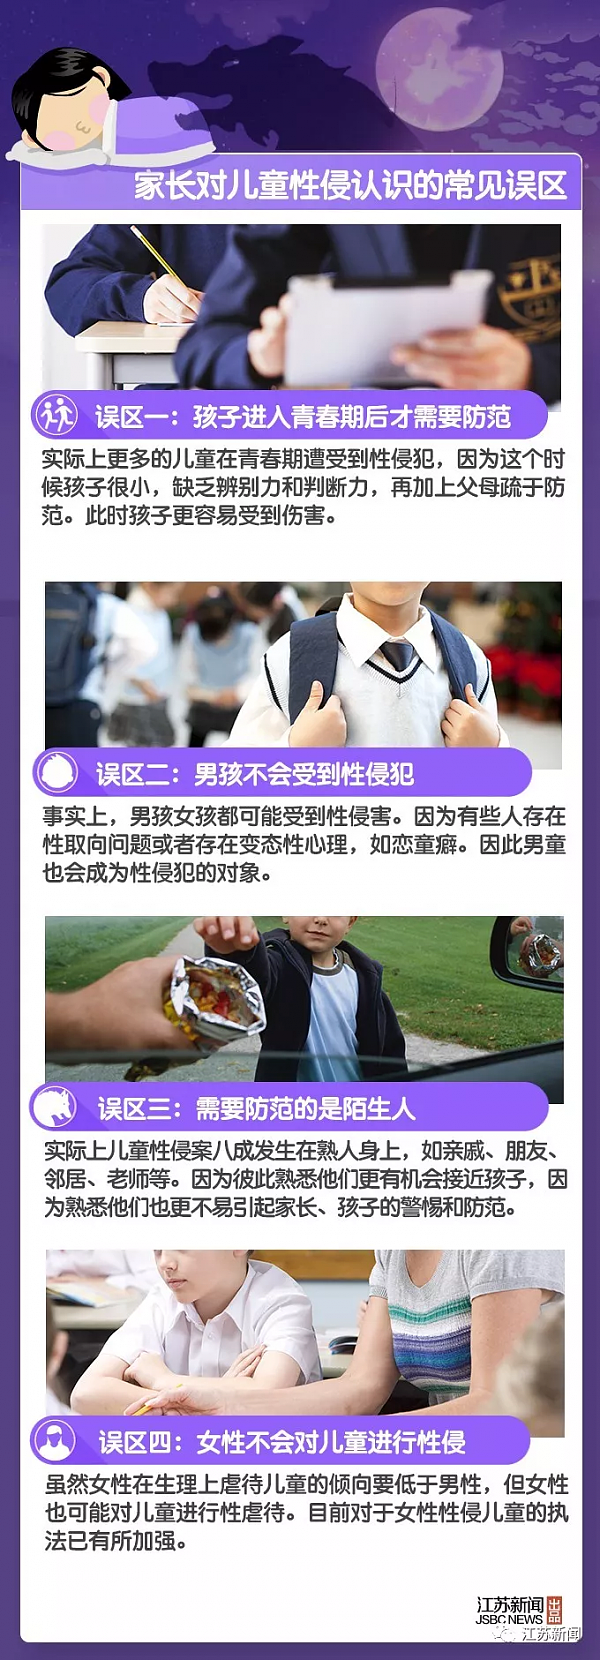 南京12岁男孩遭补习班5旬老师猥亵 被亲嘴摸下体